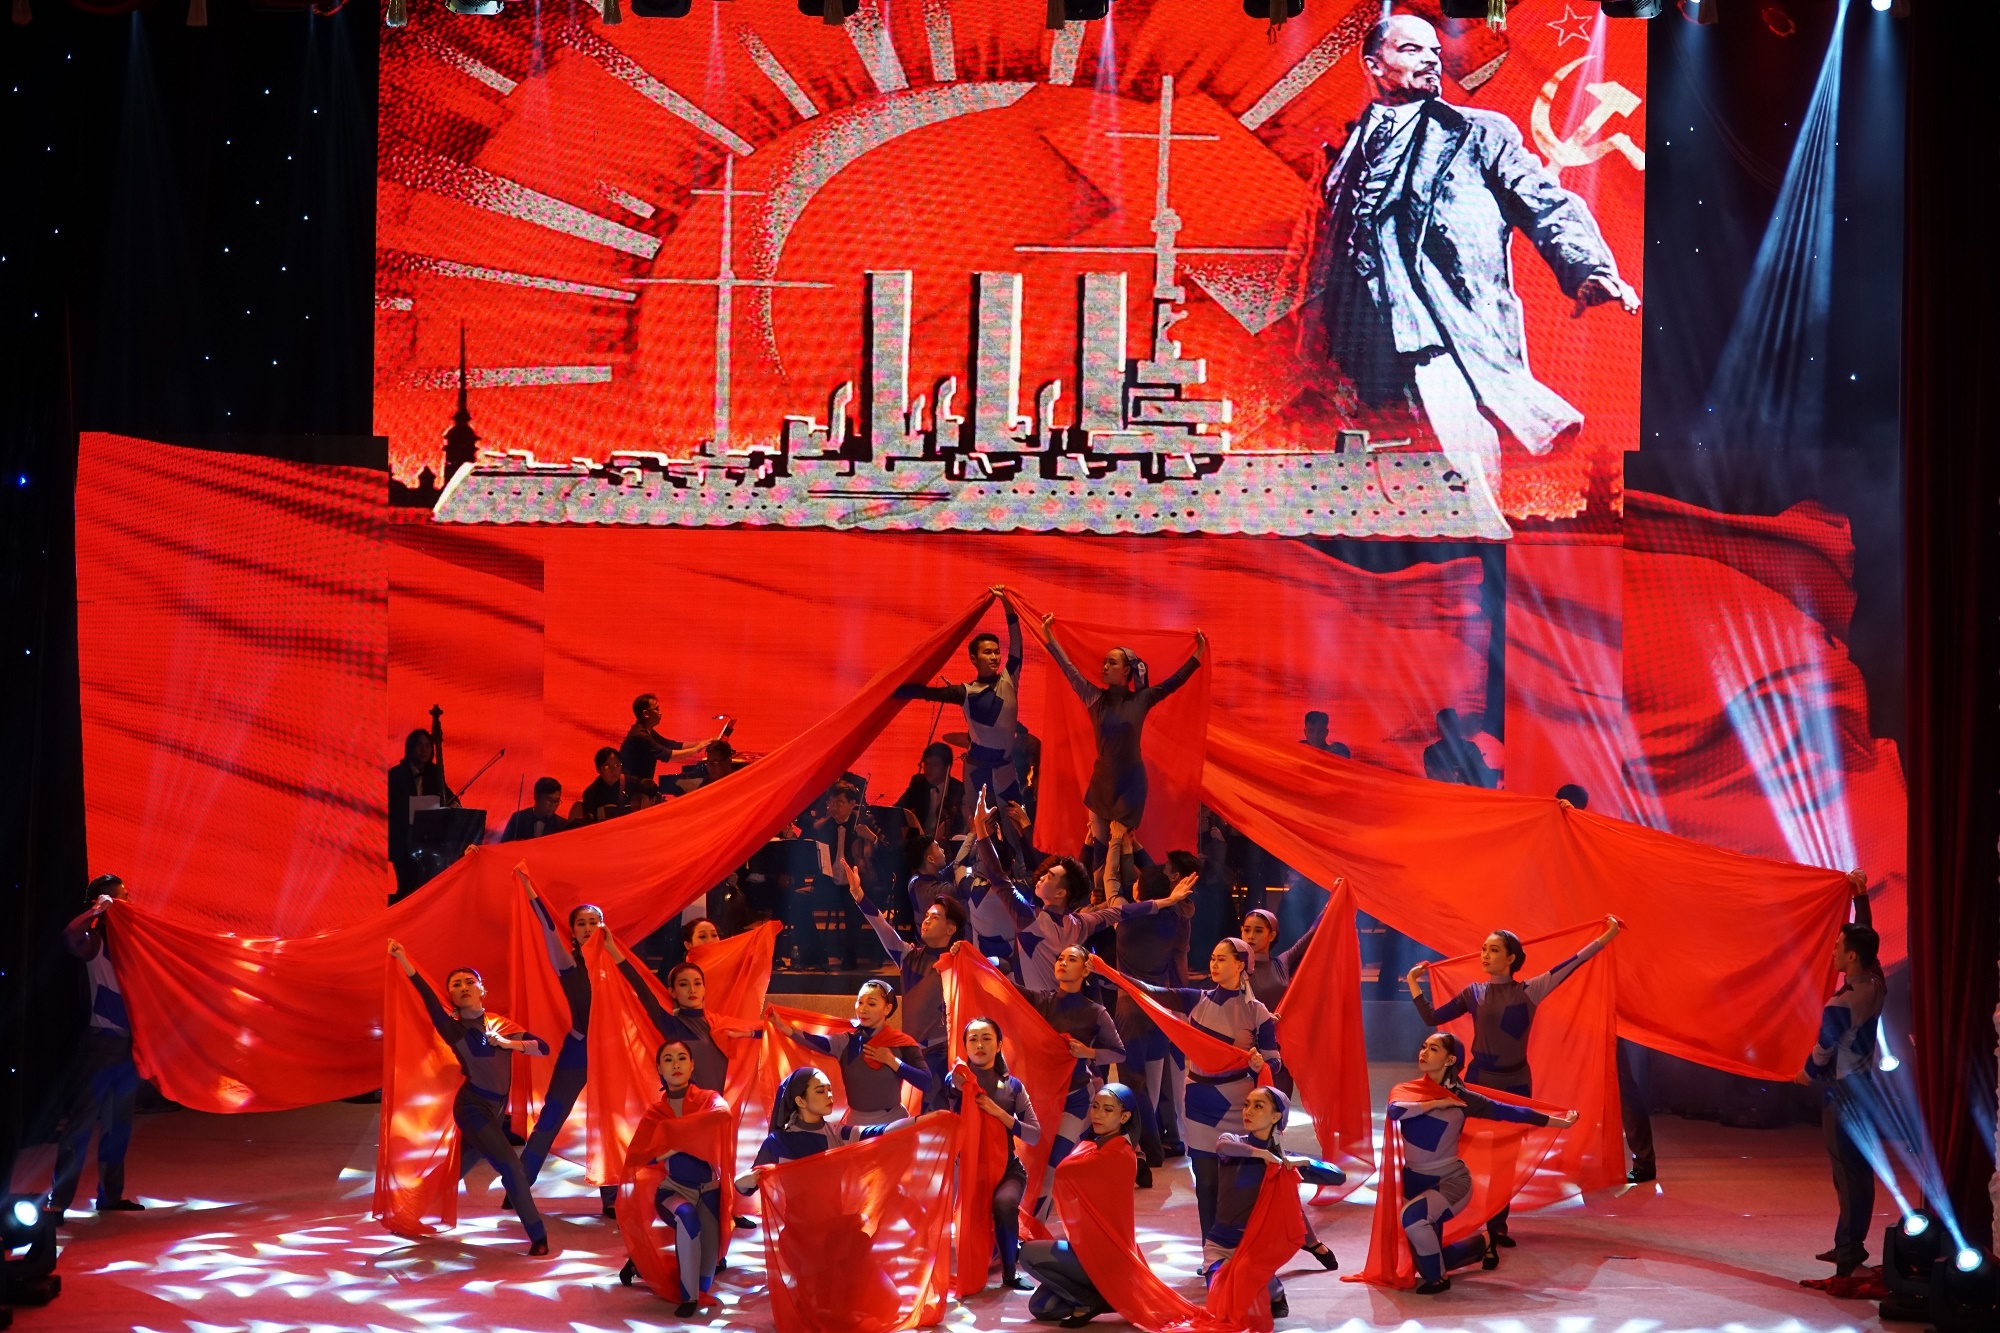 Hoạt động nghệ thuật kỷ niệm 100 năm Cách mạng tháng Mười tại Thành phố Hồ Chí Minh (Ảnh: Phương Vy/TTXVN)